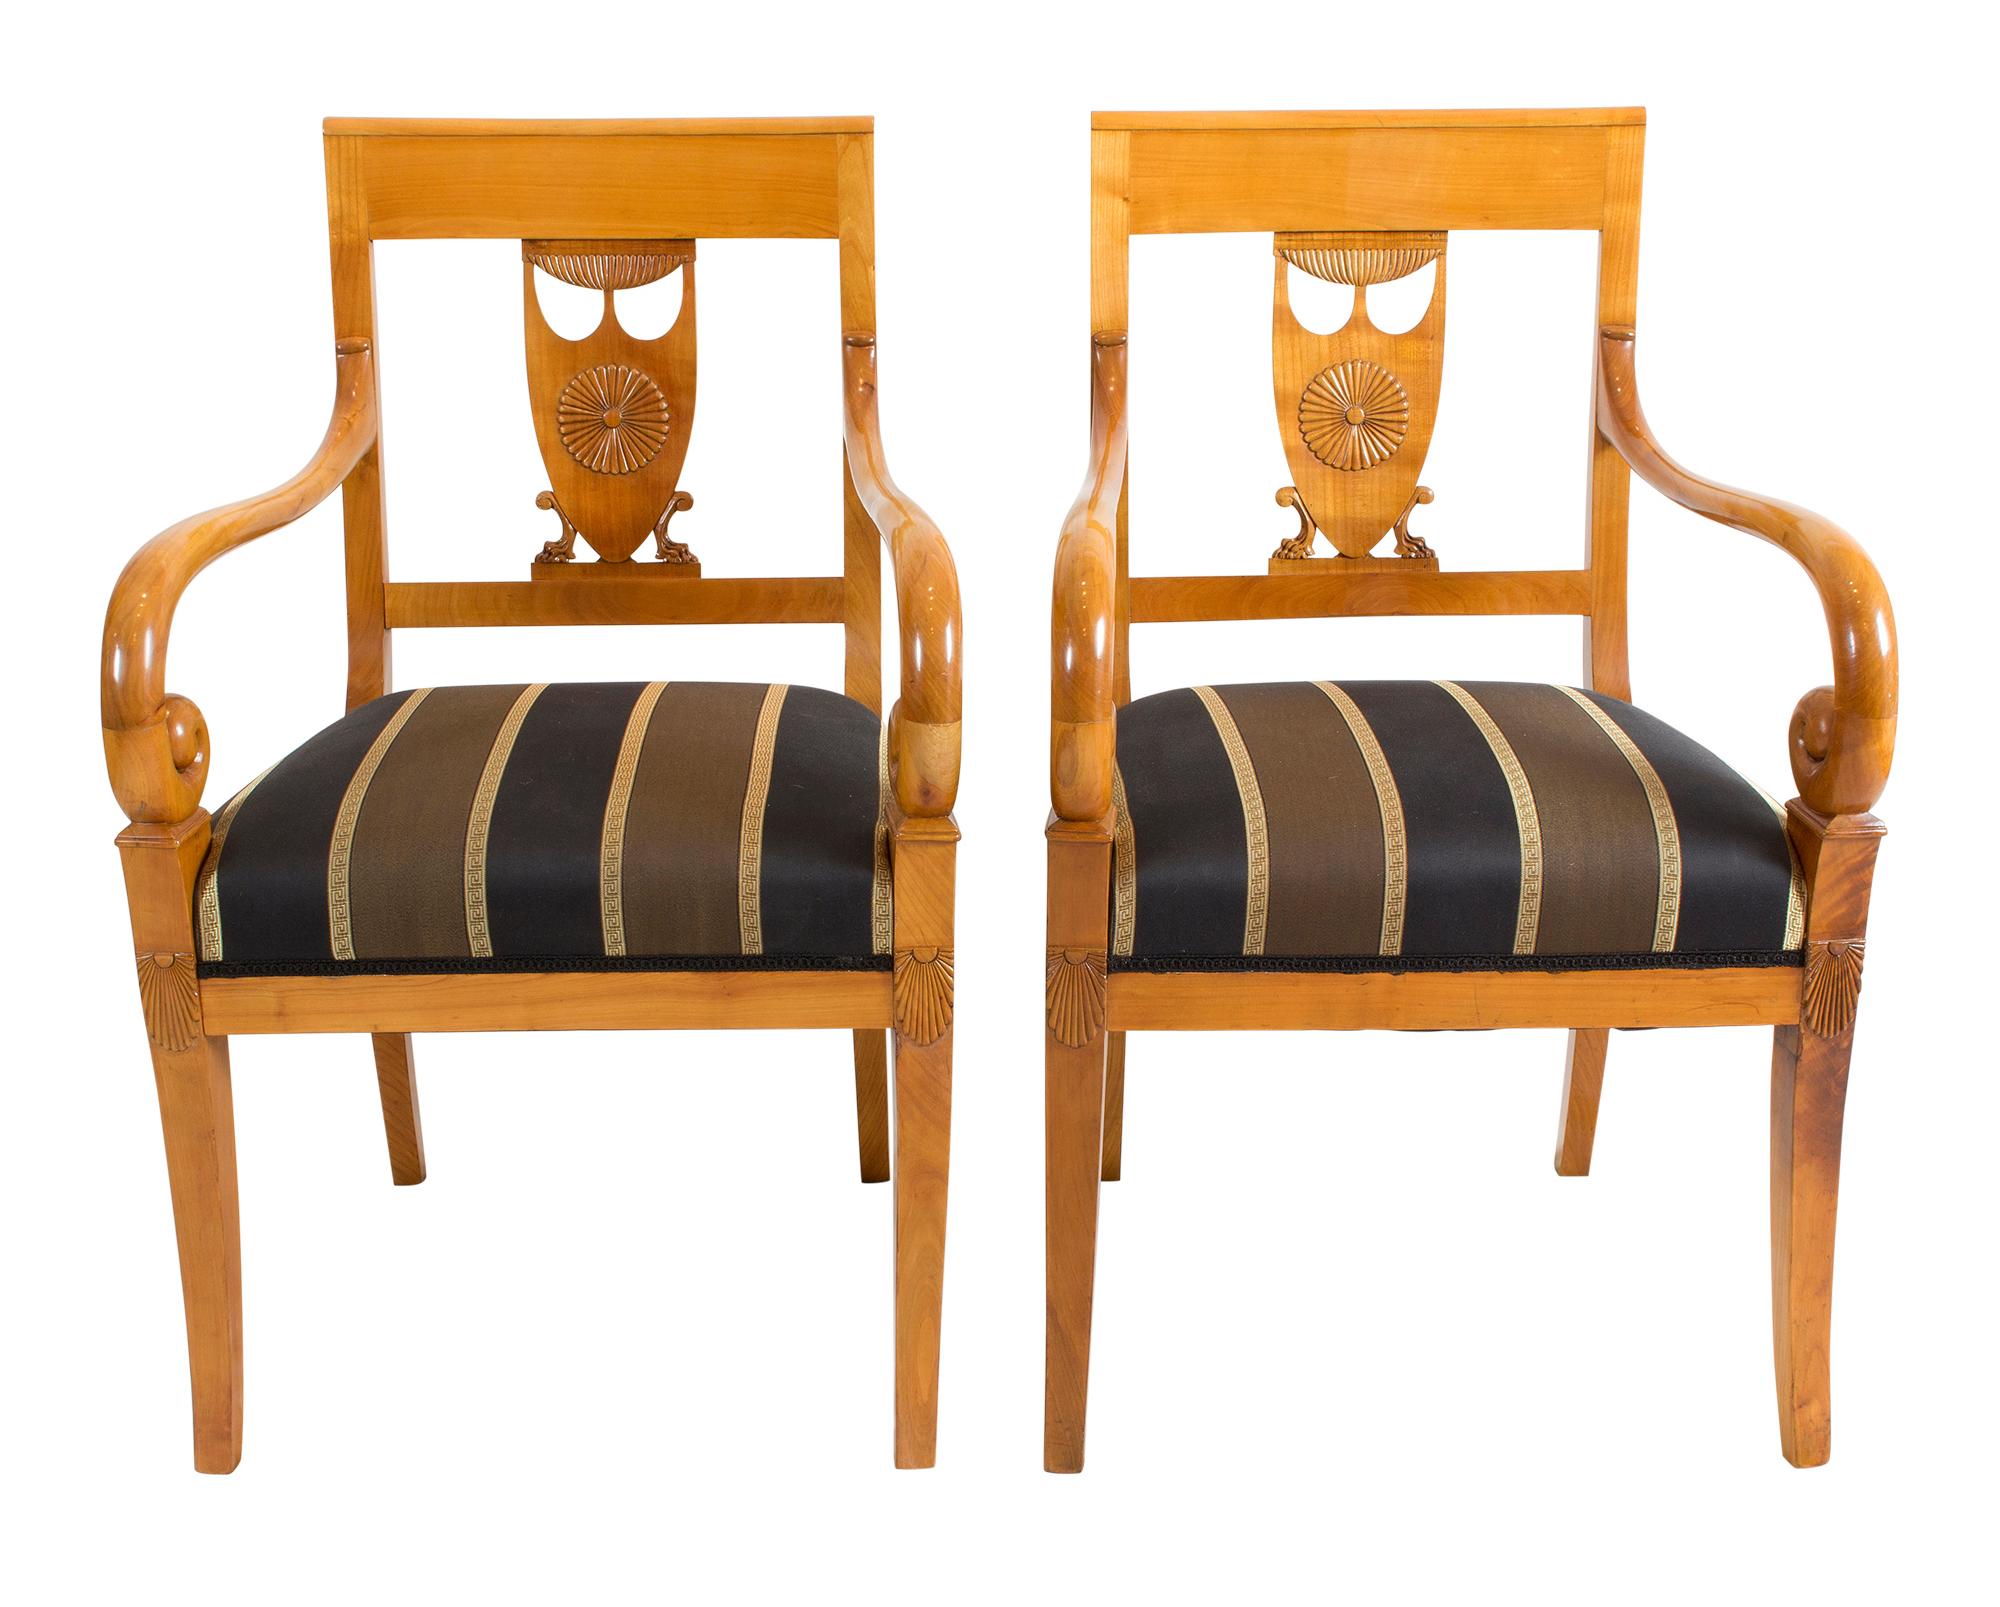 Magnifique ensemble de sièges unique composé de 2 fauteuils et de 6 chaises. Le groupe date de la période Empire du début du XIXe siècle, vers 1800-1810. Toutes les chaises sont fabriquées en bois de cerisier massif. Le groupe est en très bon état